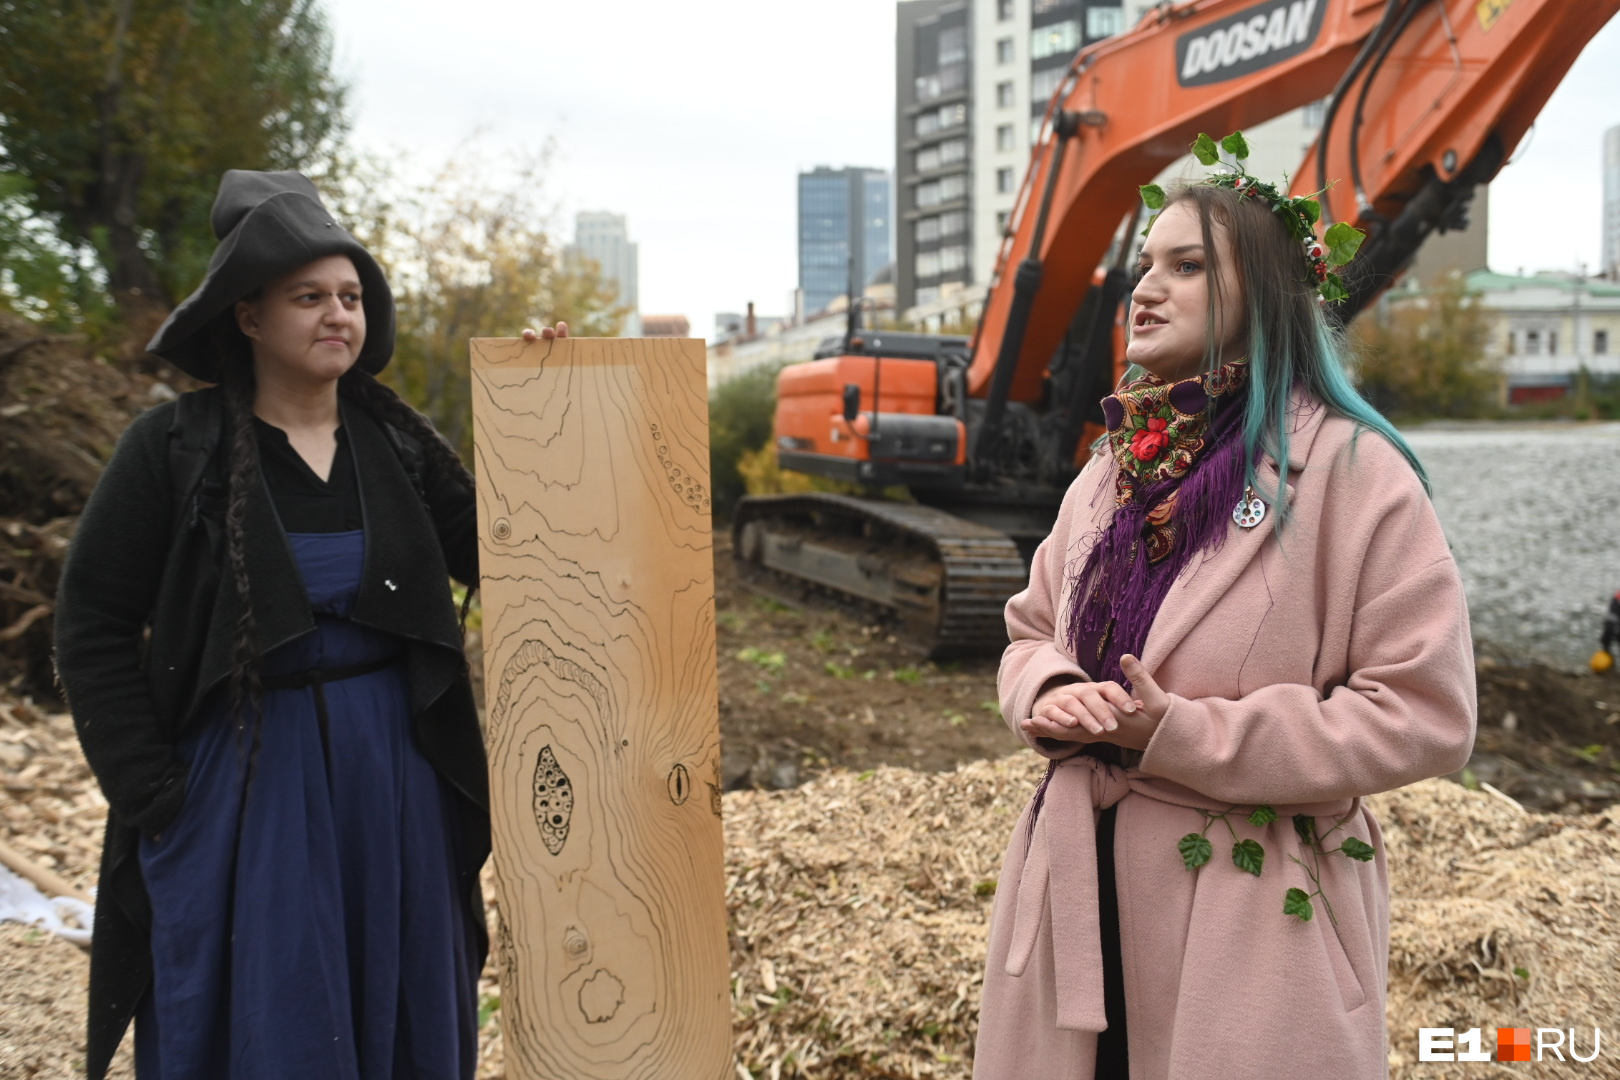 Художница принесла на площадку свой новый арт-объект, символизирующий мертвое дерево, которое смотрит на людей